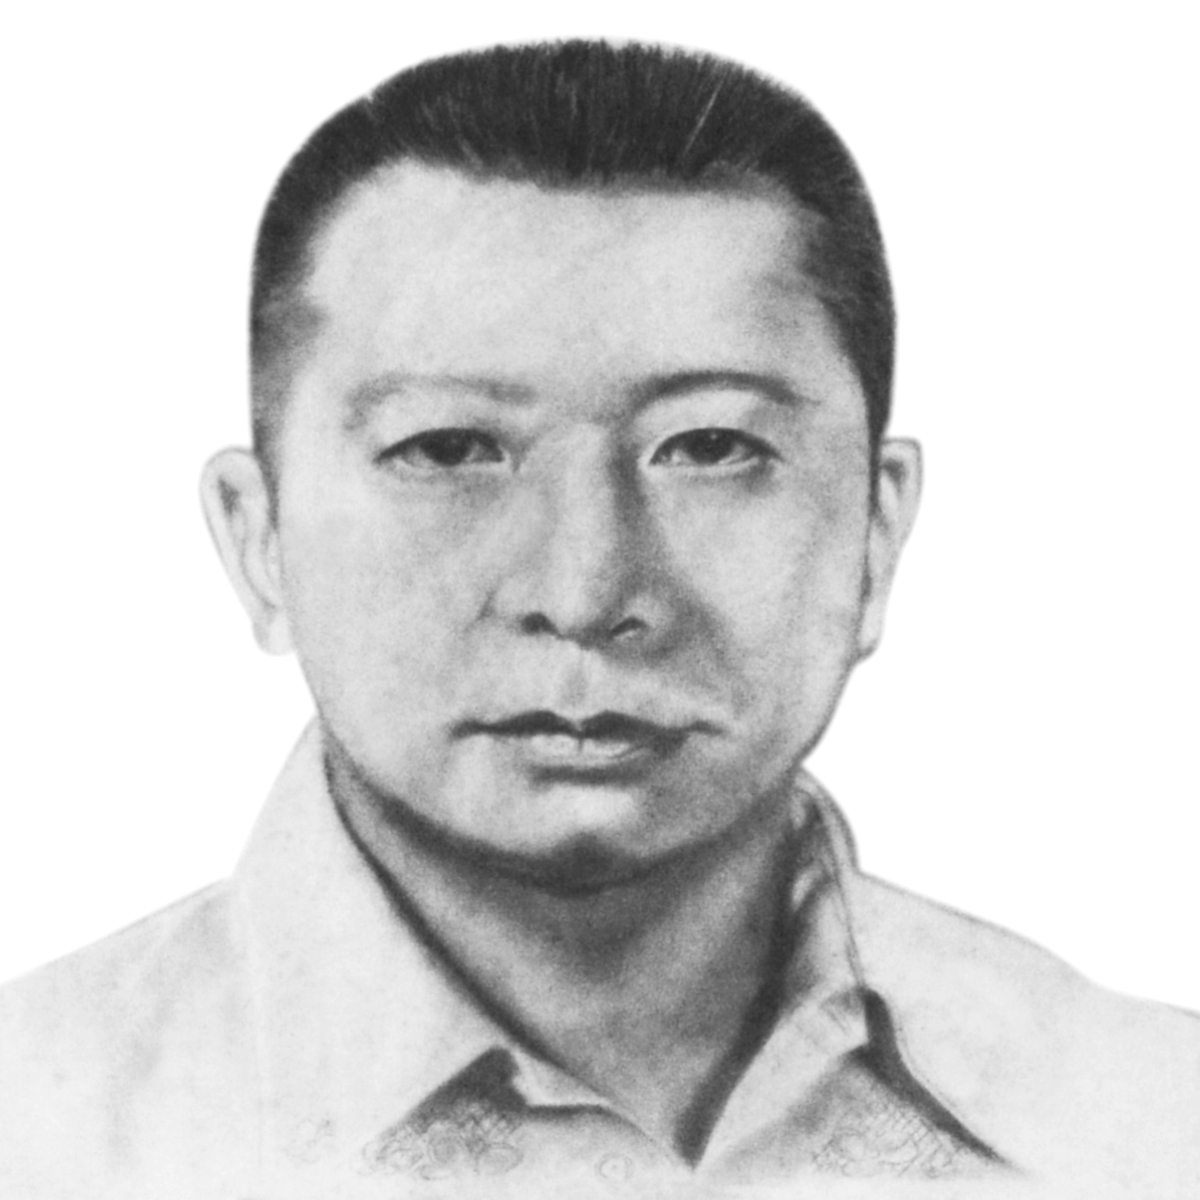  Eduardo T. Yu, Jr.